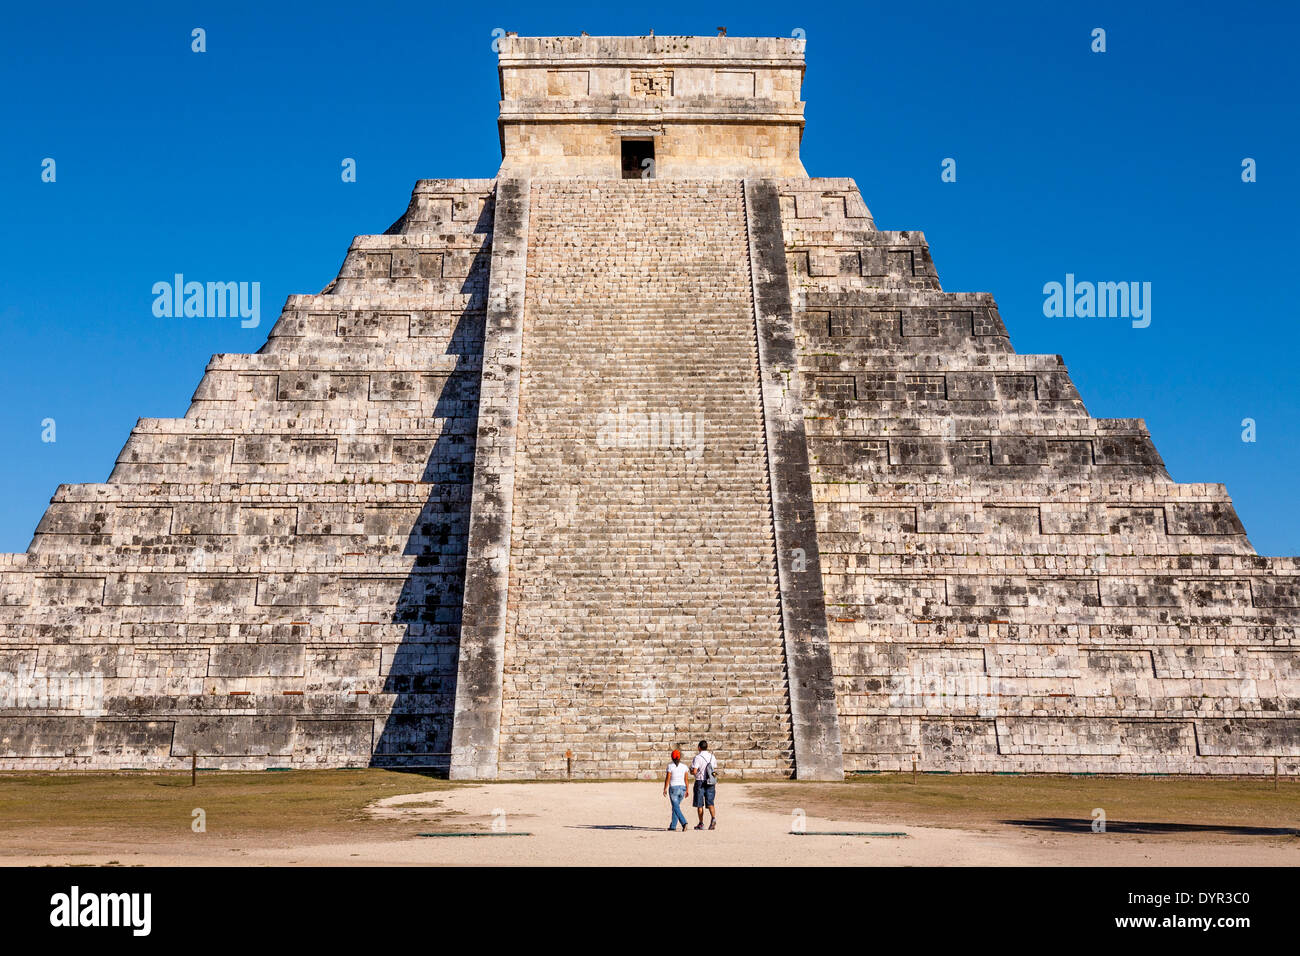 El Castillo, Chichen Itza site archéologique, Yucatan, Mexique Banque D'Images